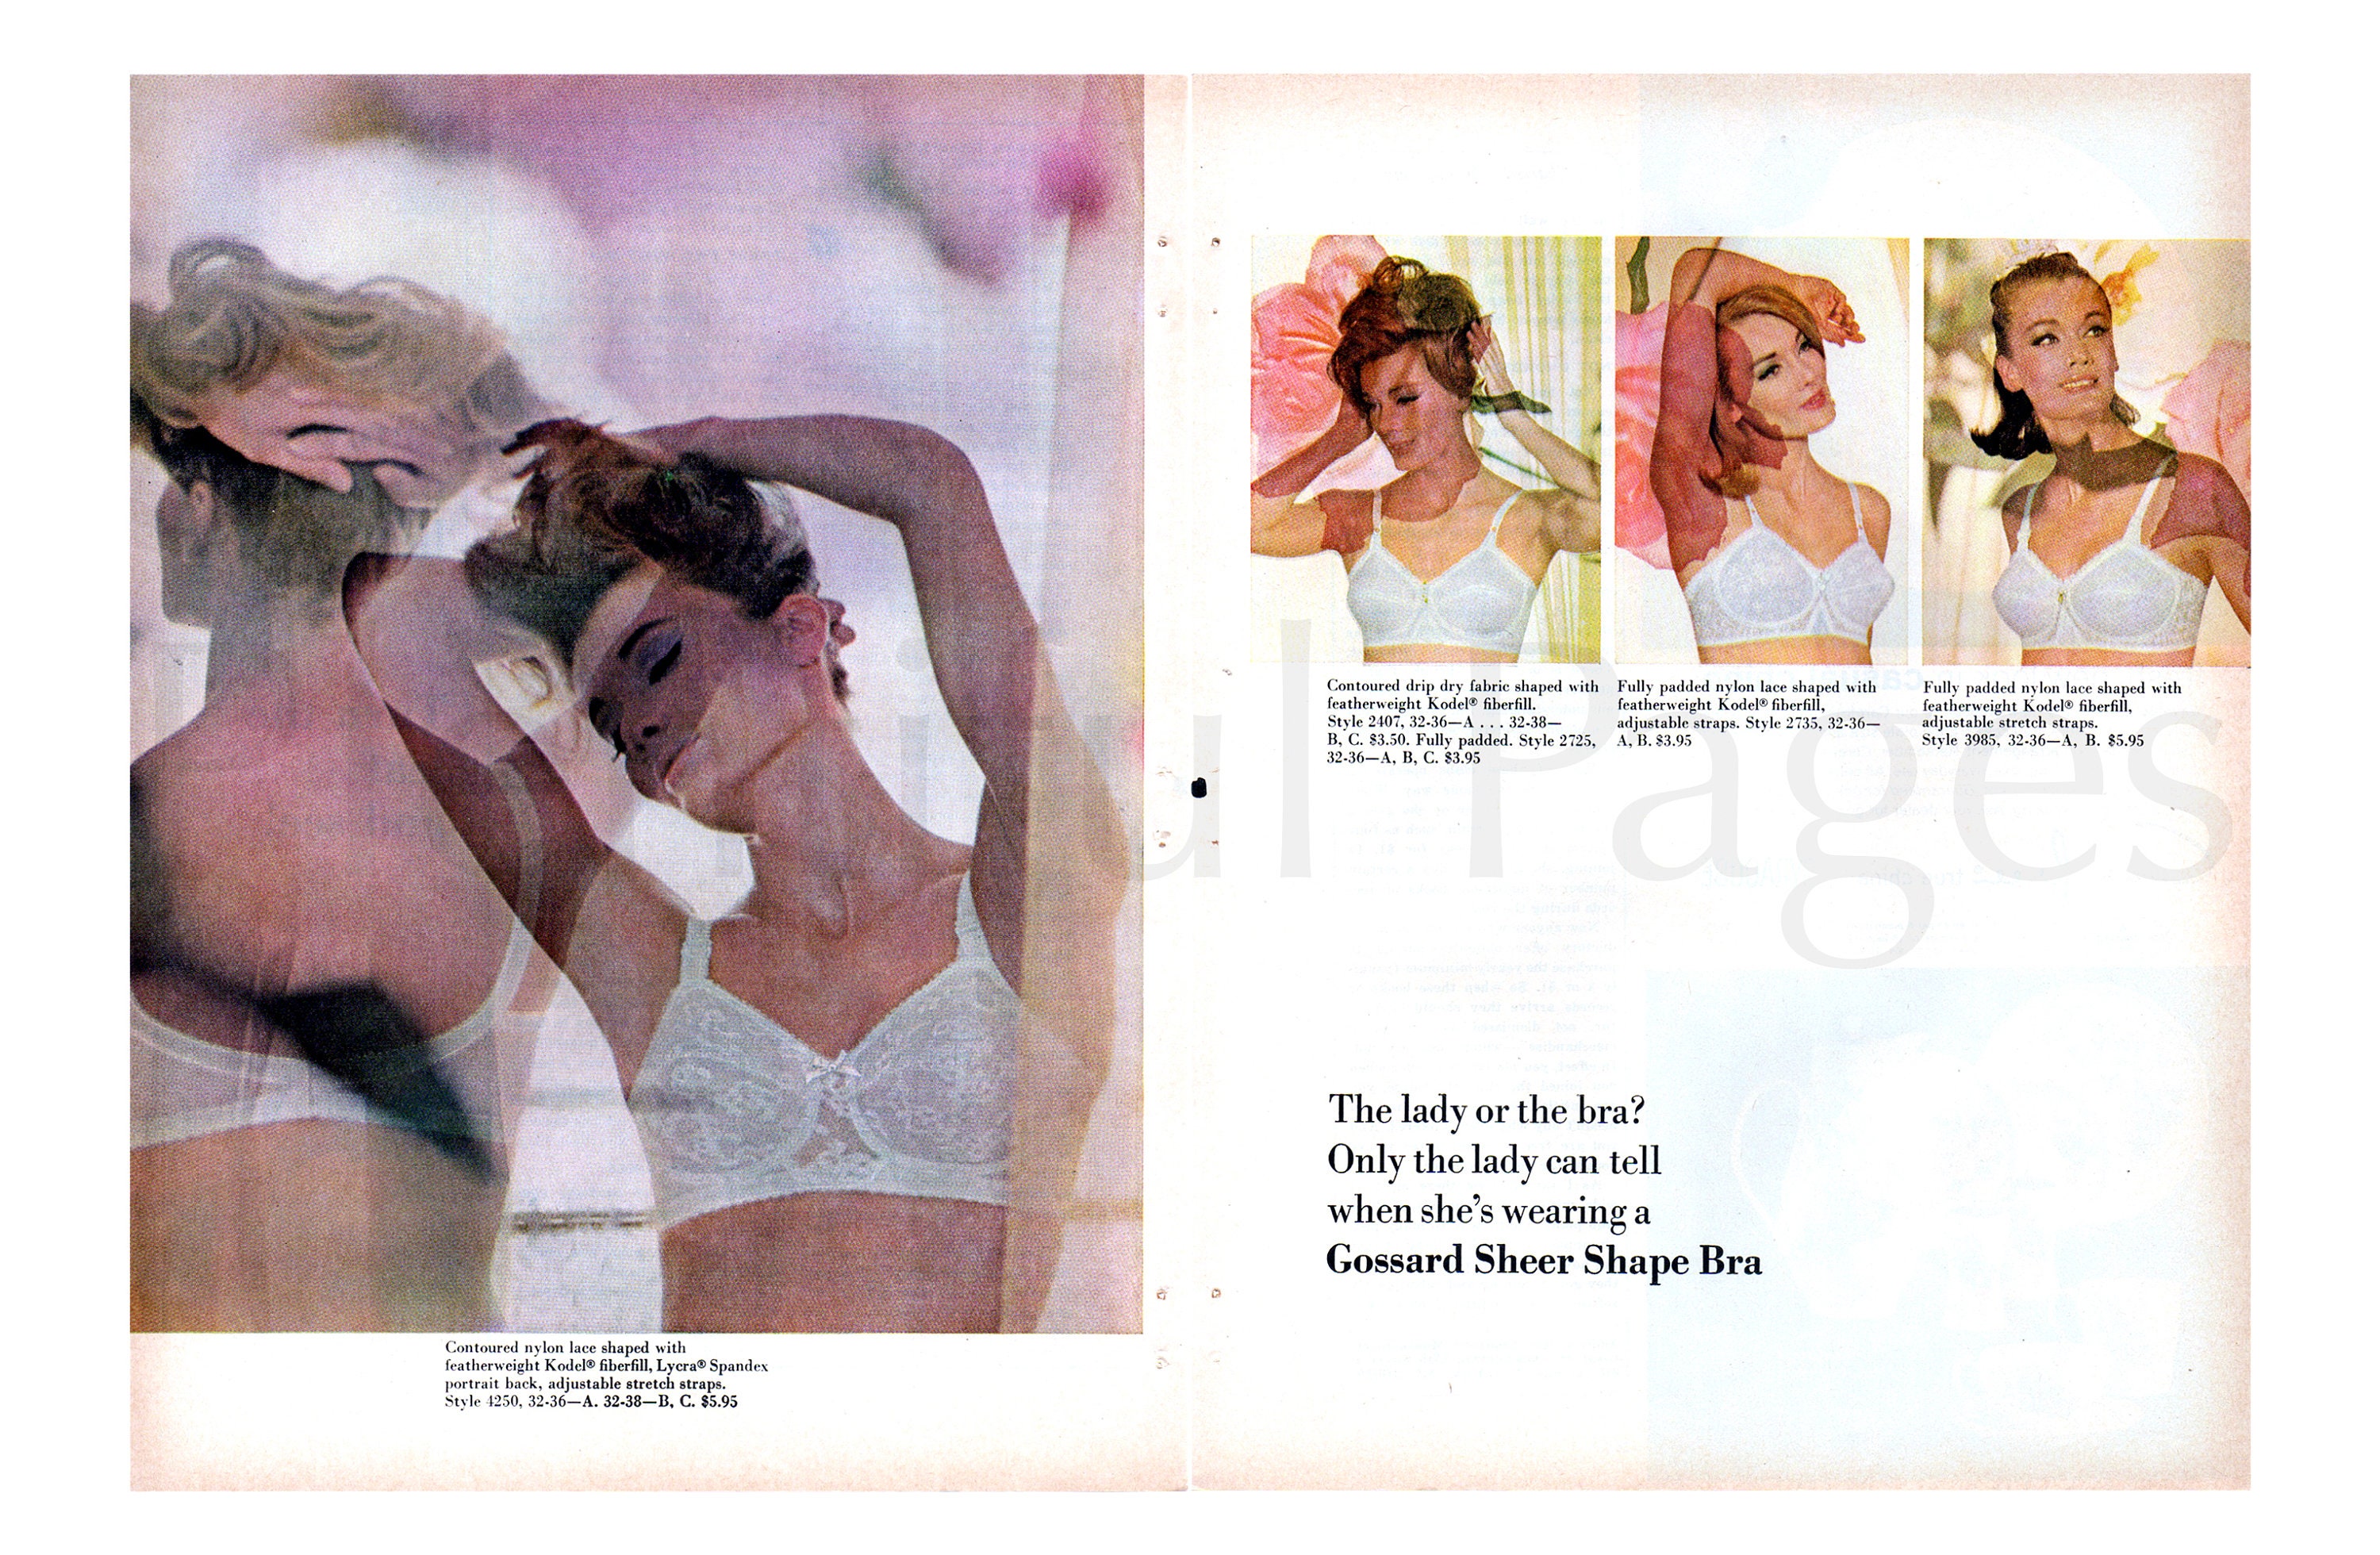 1969 Bali Lingerie Vintage Double Print Ads Set 60s Fashion Models Bras  Slips Girdles Lingerie Set of 2 Vintage Ads -  Canada